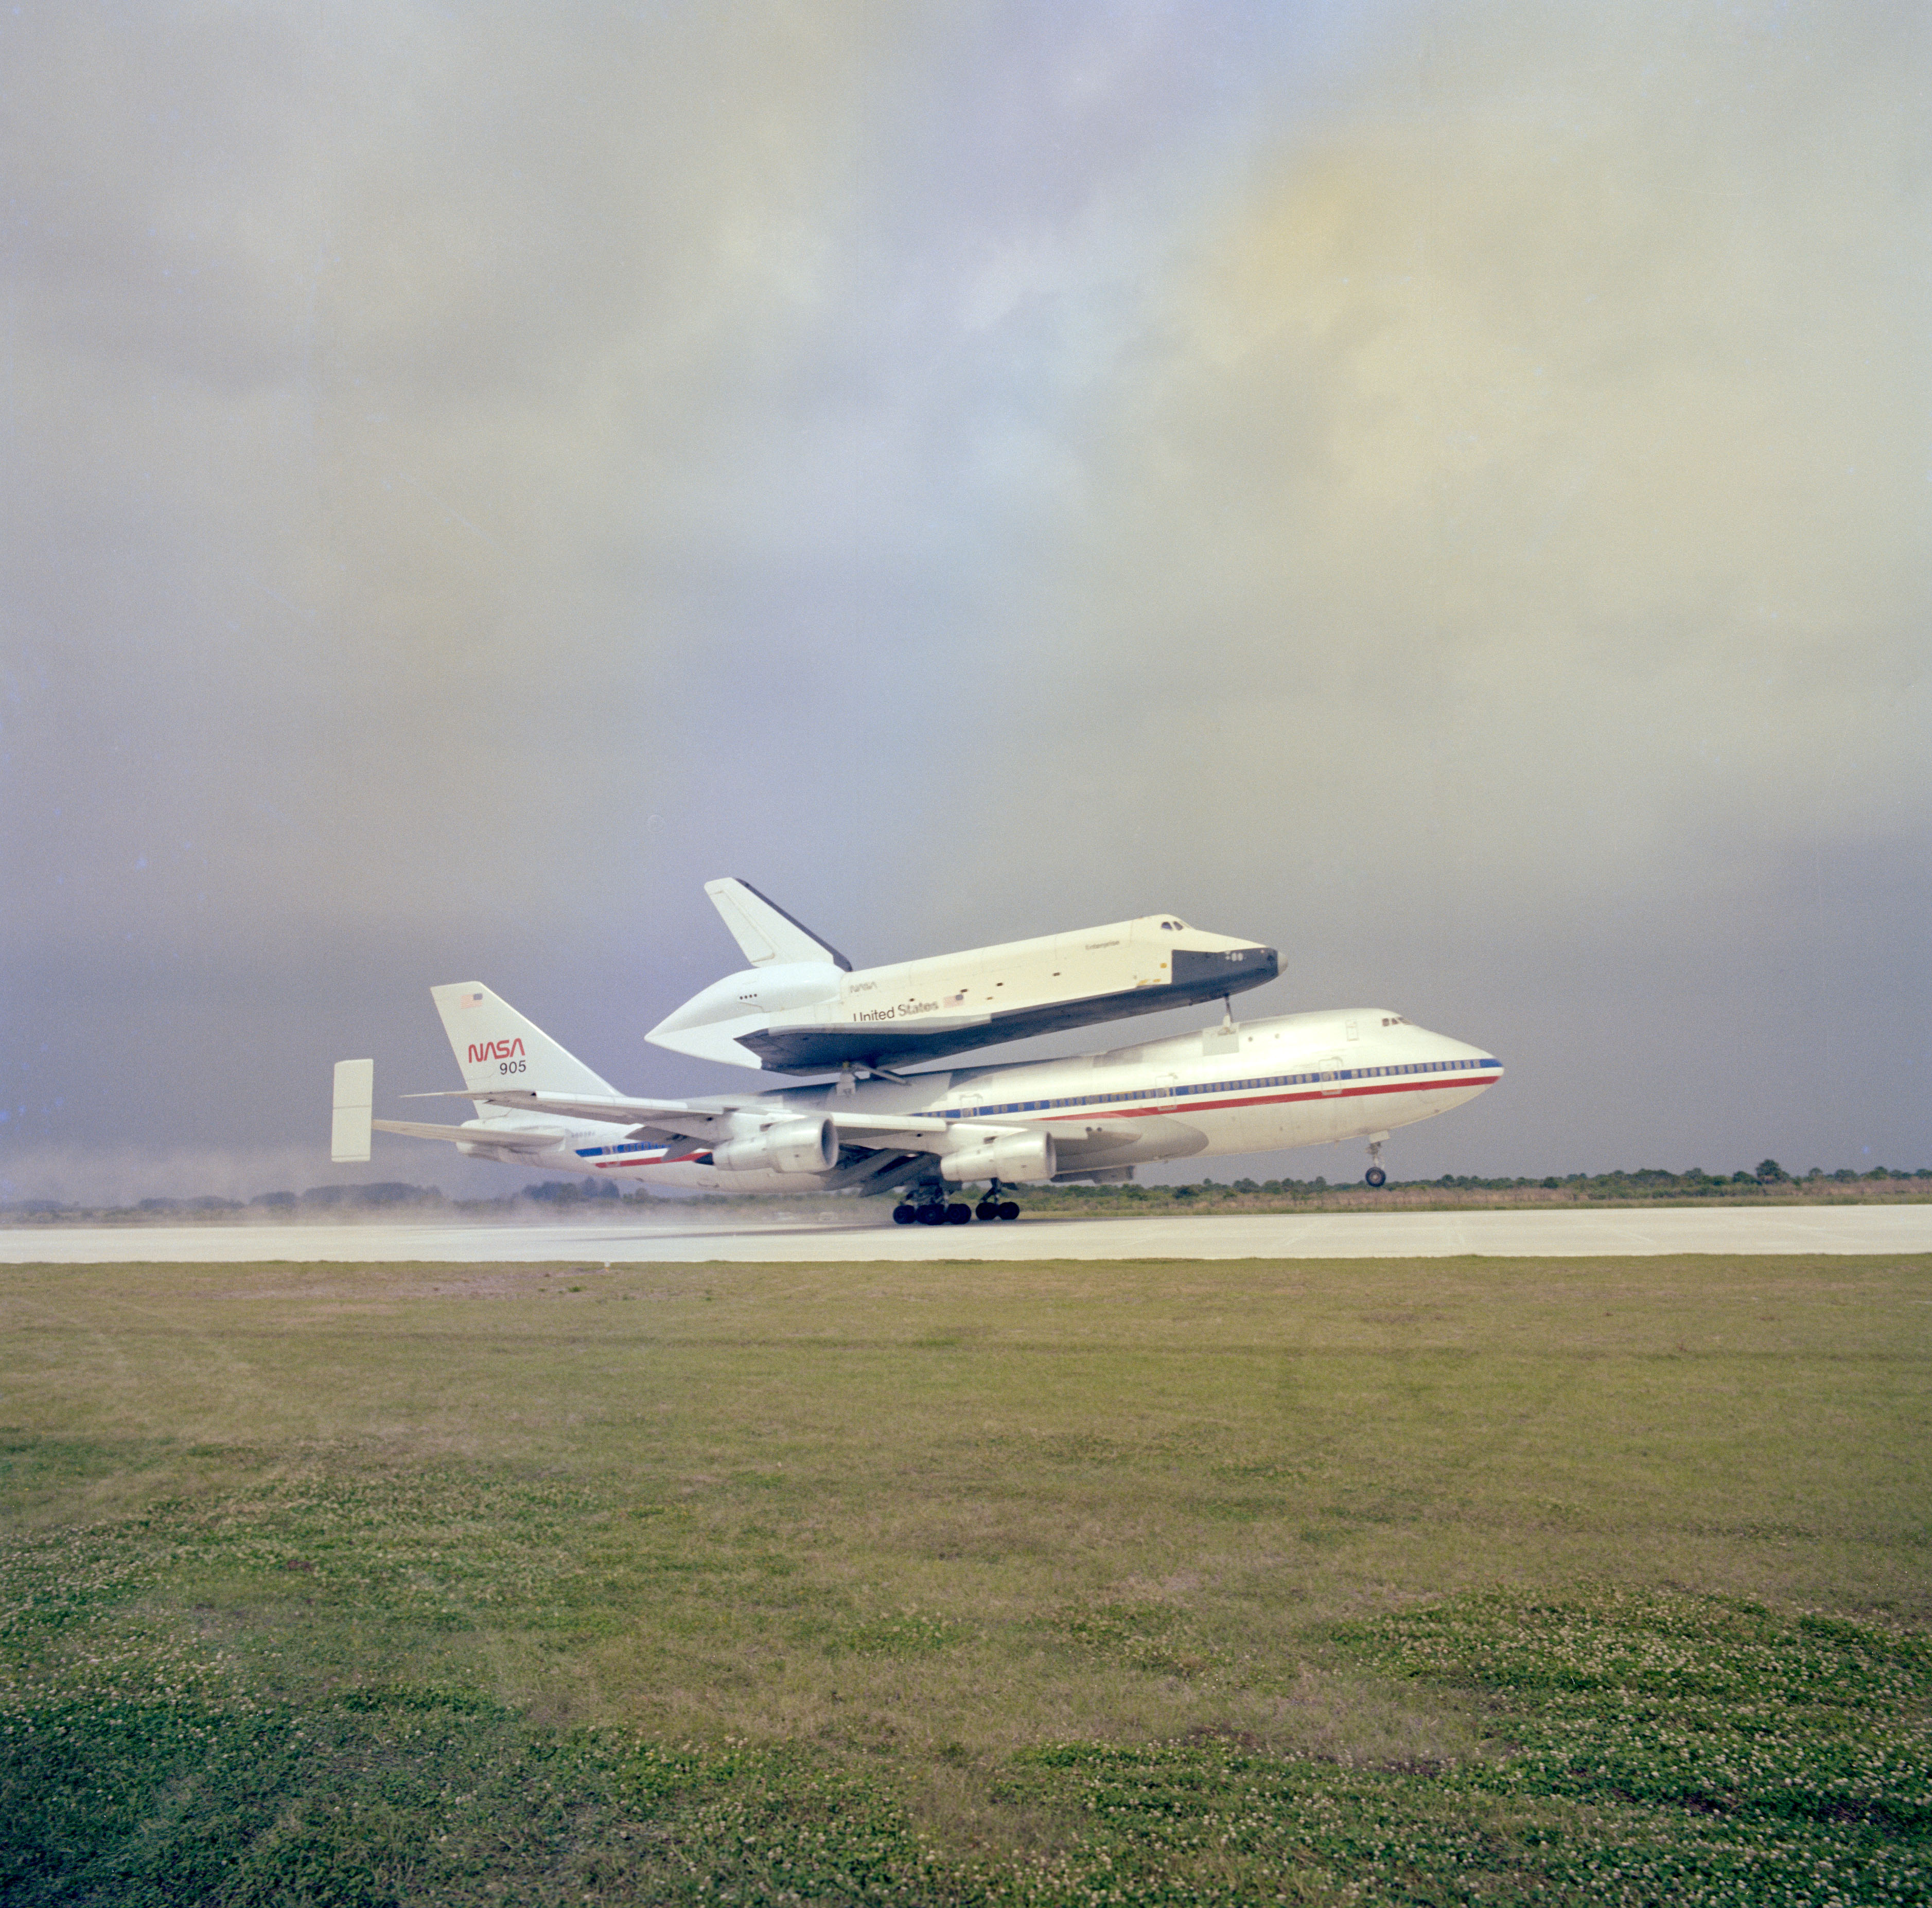 Nel gennaio 1977, i lavoratori trasportarono l'Enterprise per 36 miglia via terra da Palmdale al Dryden della NASA, ora Armstrong, Flight Research Center presso la base aeronautica di Edwards (AFB) in California, per il programma ALT, una serie di voli sempre più complessi per valutare l'idoneità aerea dello shuttle. . A Dryden, i lavoratori hanno posizionato l'Enterprise sul retro dello Shuttle Carrier Aircraft (SCA), un Boeing 747 modificato. I due hanno iniziato le corse in taxi a febbraio, seguite dal primo volo inattivo in cattività alla fine del mese. Il primo volo attivo in cattività con un equipaggio a bordo dell'orbiter ha avuto luogo a giugno, mentre l'Enterprise ha effettuato il suo primo volo indipendente il 12 agosto con Haise e Fullerton ai comandi. Quattro ulteriori voli di avvicinamento e atterraggio hanno completato il programma ALT entro ottobre. Nel marzo 1978, l'Enterprise iniziò il suo primo viaggio attraverso il paese. A bordo della SCA, l'Enterprise lasciò Edwards e, dopo uno scalo nel fine settimana all'Ellington AFB di Houston, arrivò all'aeroporto del Redstone Arsenal a Huntsville, in Alabama. I lavoratori hanno trasportato l'Enterprise all'adiacente Marshall Space Flight Center della NASA, dove gli ingegneri per la prima volta l'hanno accoppiata con un serbatoio esterno (ET) e un booster a razzo solido (SRB) inerte nell'impianto di test strutturale dinamico. Per l'anno successivo, gli ingegneri hanno condotto una serie di test di vibrazione sul veicolo combinato, simulando le condizioni attese durante un lancio reale.